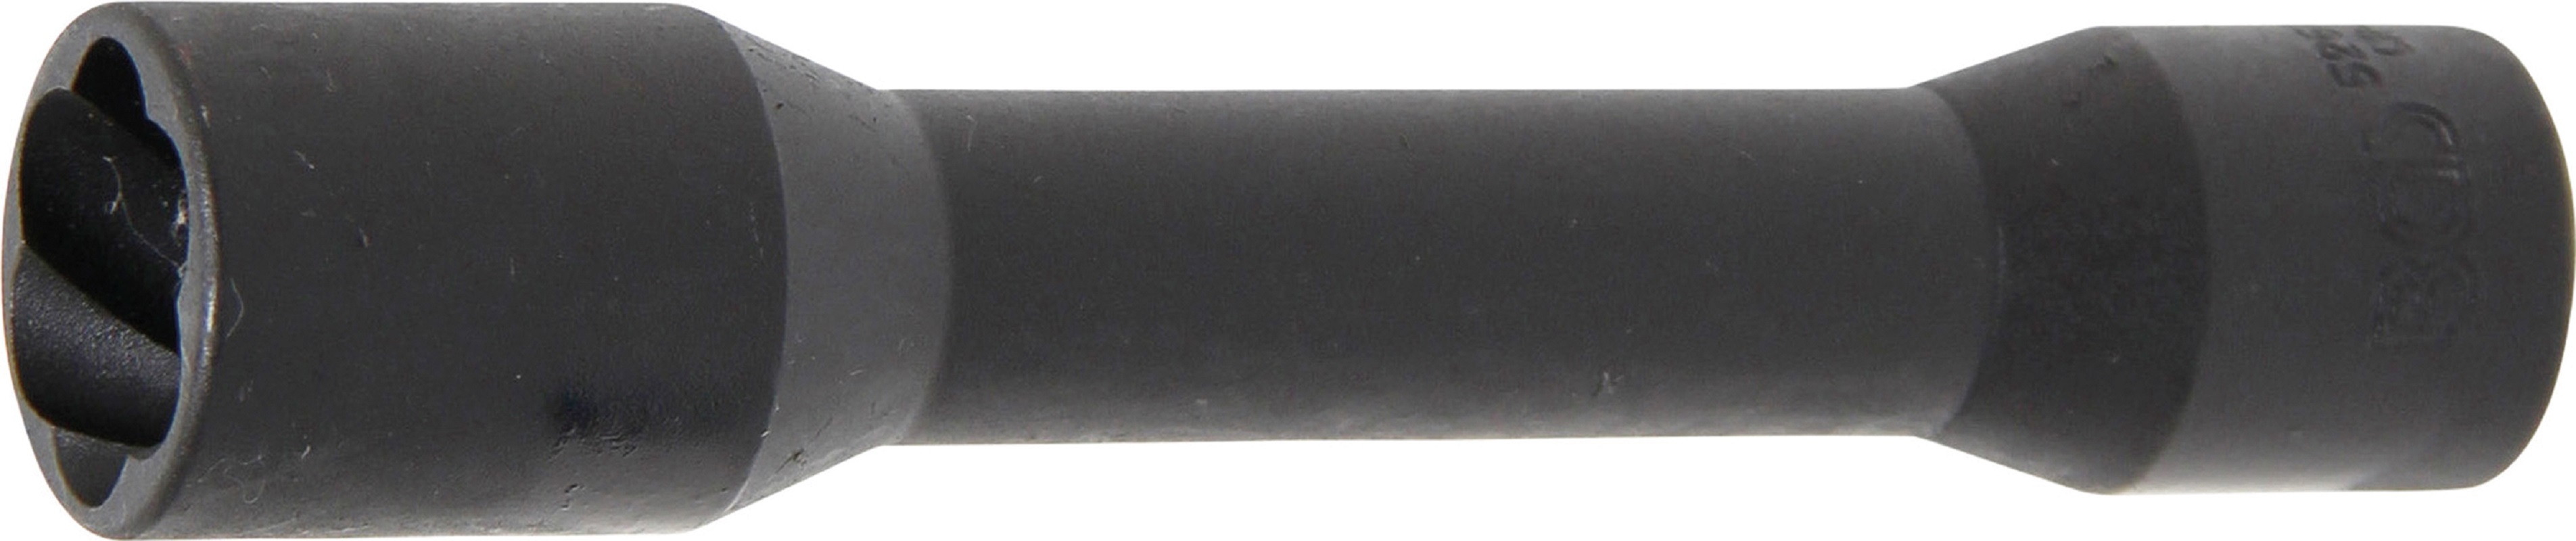 Spezial-Steckschlüssel-Einsatz / Schraubenausdreher, tief | Antrieb Innenvierkant 12,5 mm (1/2") | SW 21 mm - BGS 5264-21